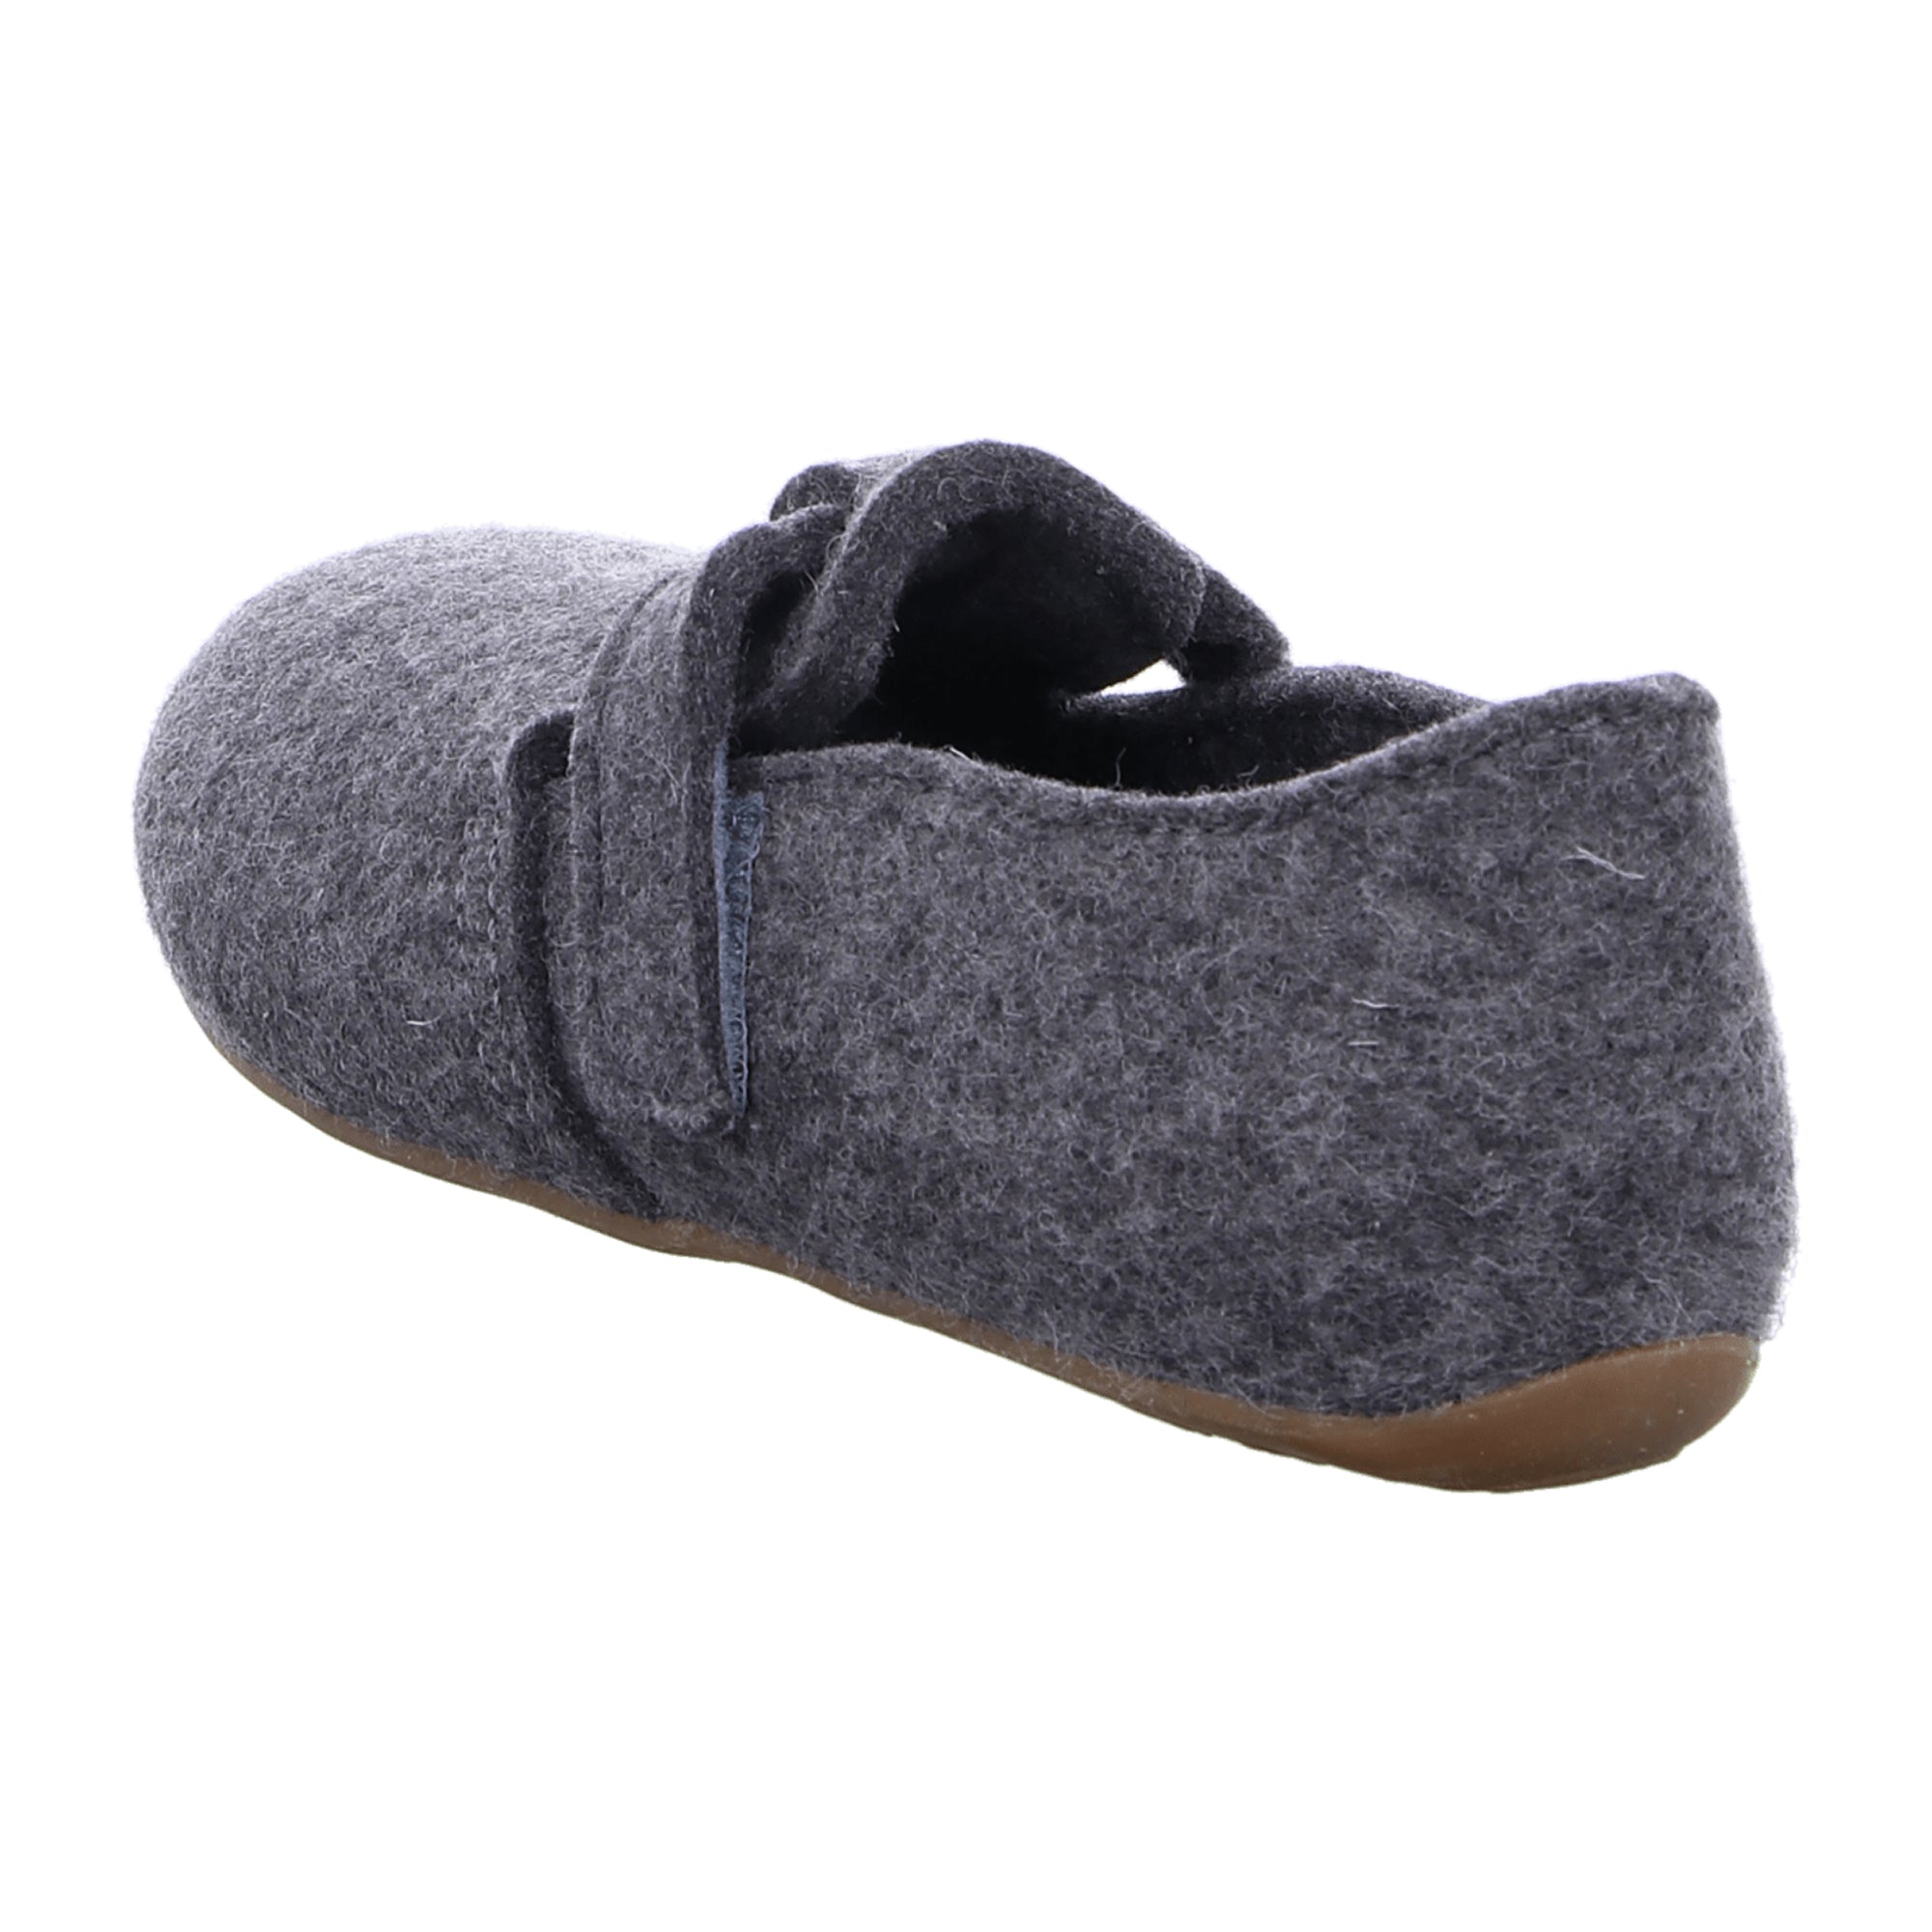 Haflinger Everest Focus Men's Wool Felt Slippers, Anthracite Grey, Removable Footbed - 481056-4